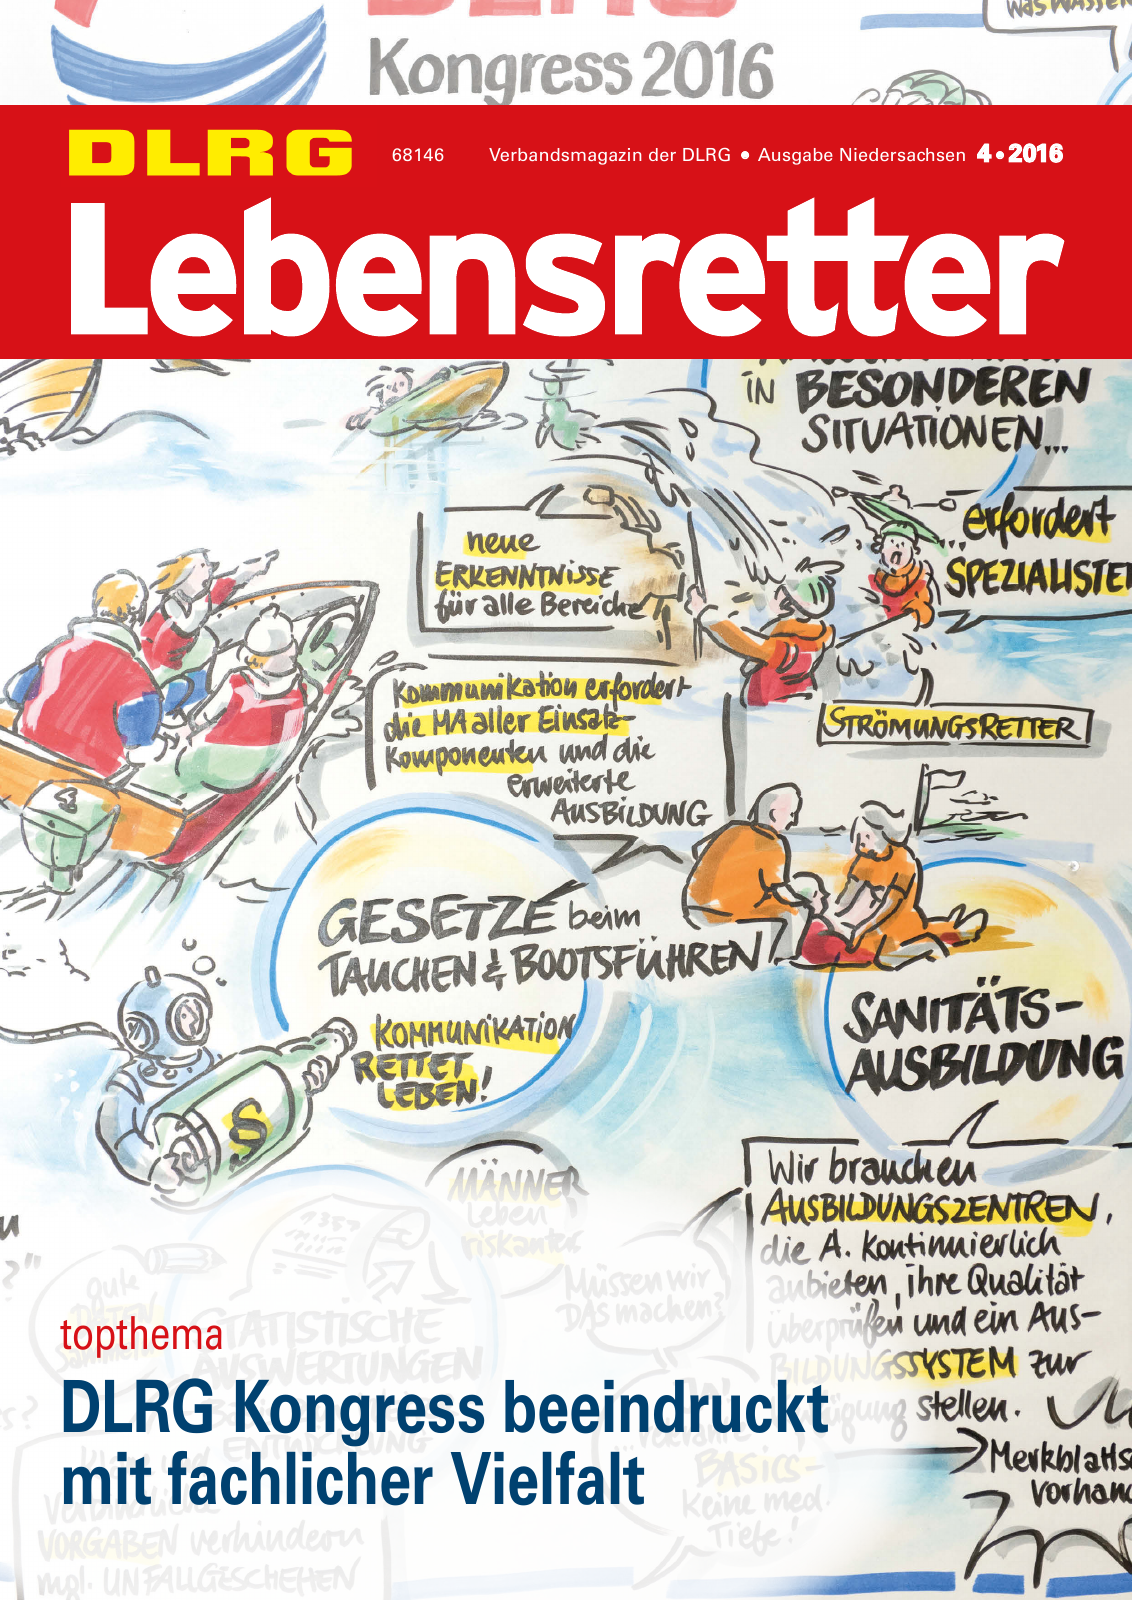 Vorschau Lebensretter 4/2016 - Regionalausgabe Niedersachsen Seite 1